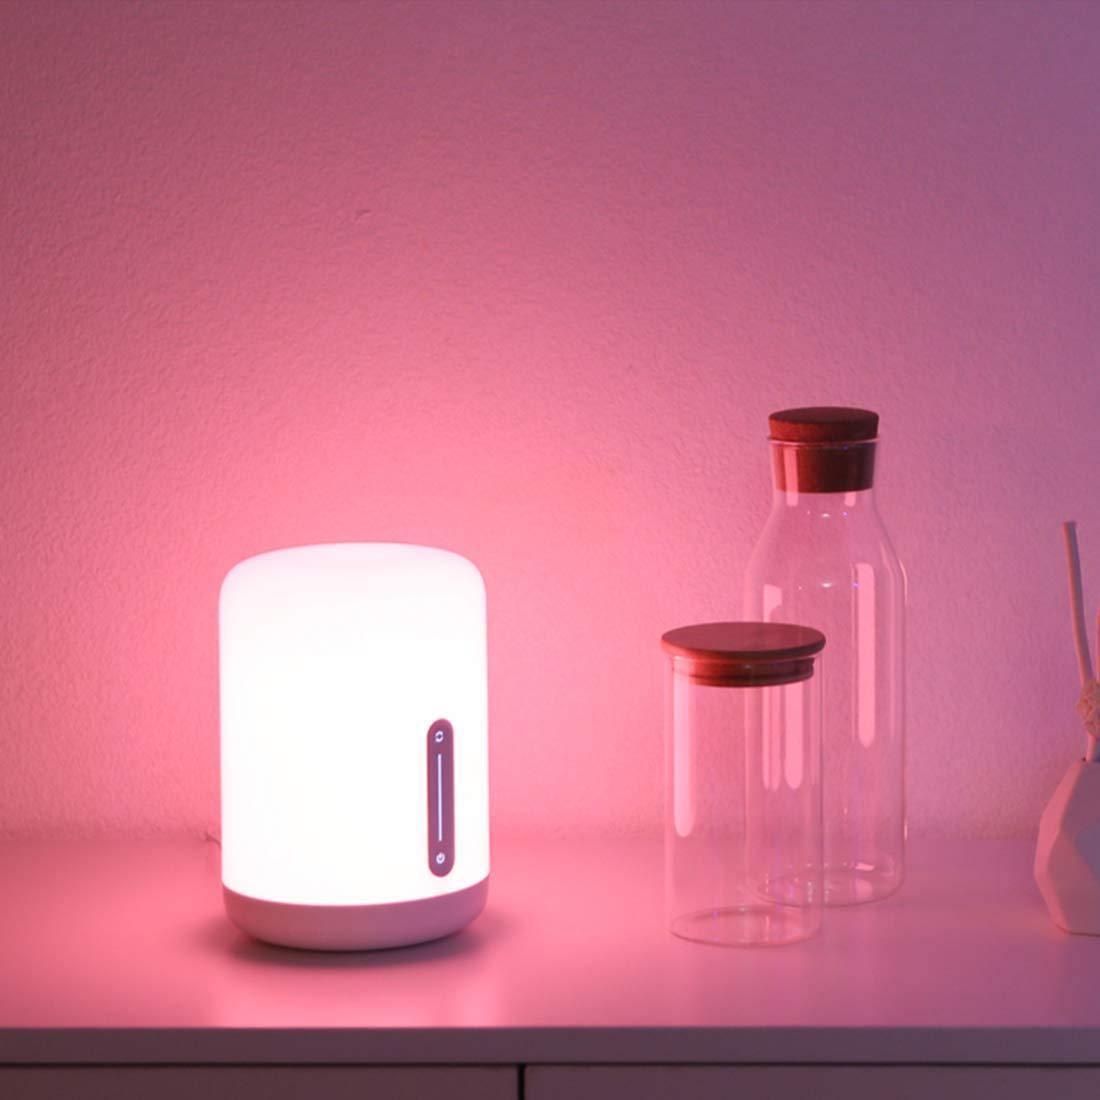 Mi Smart Bedside Lamp 2 (16 Million Colors, App-Enabled, Touch Panel)-LED Lights,-dealsplant